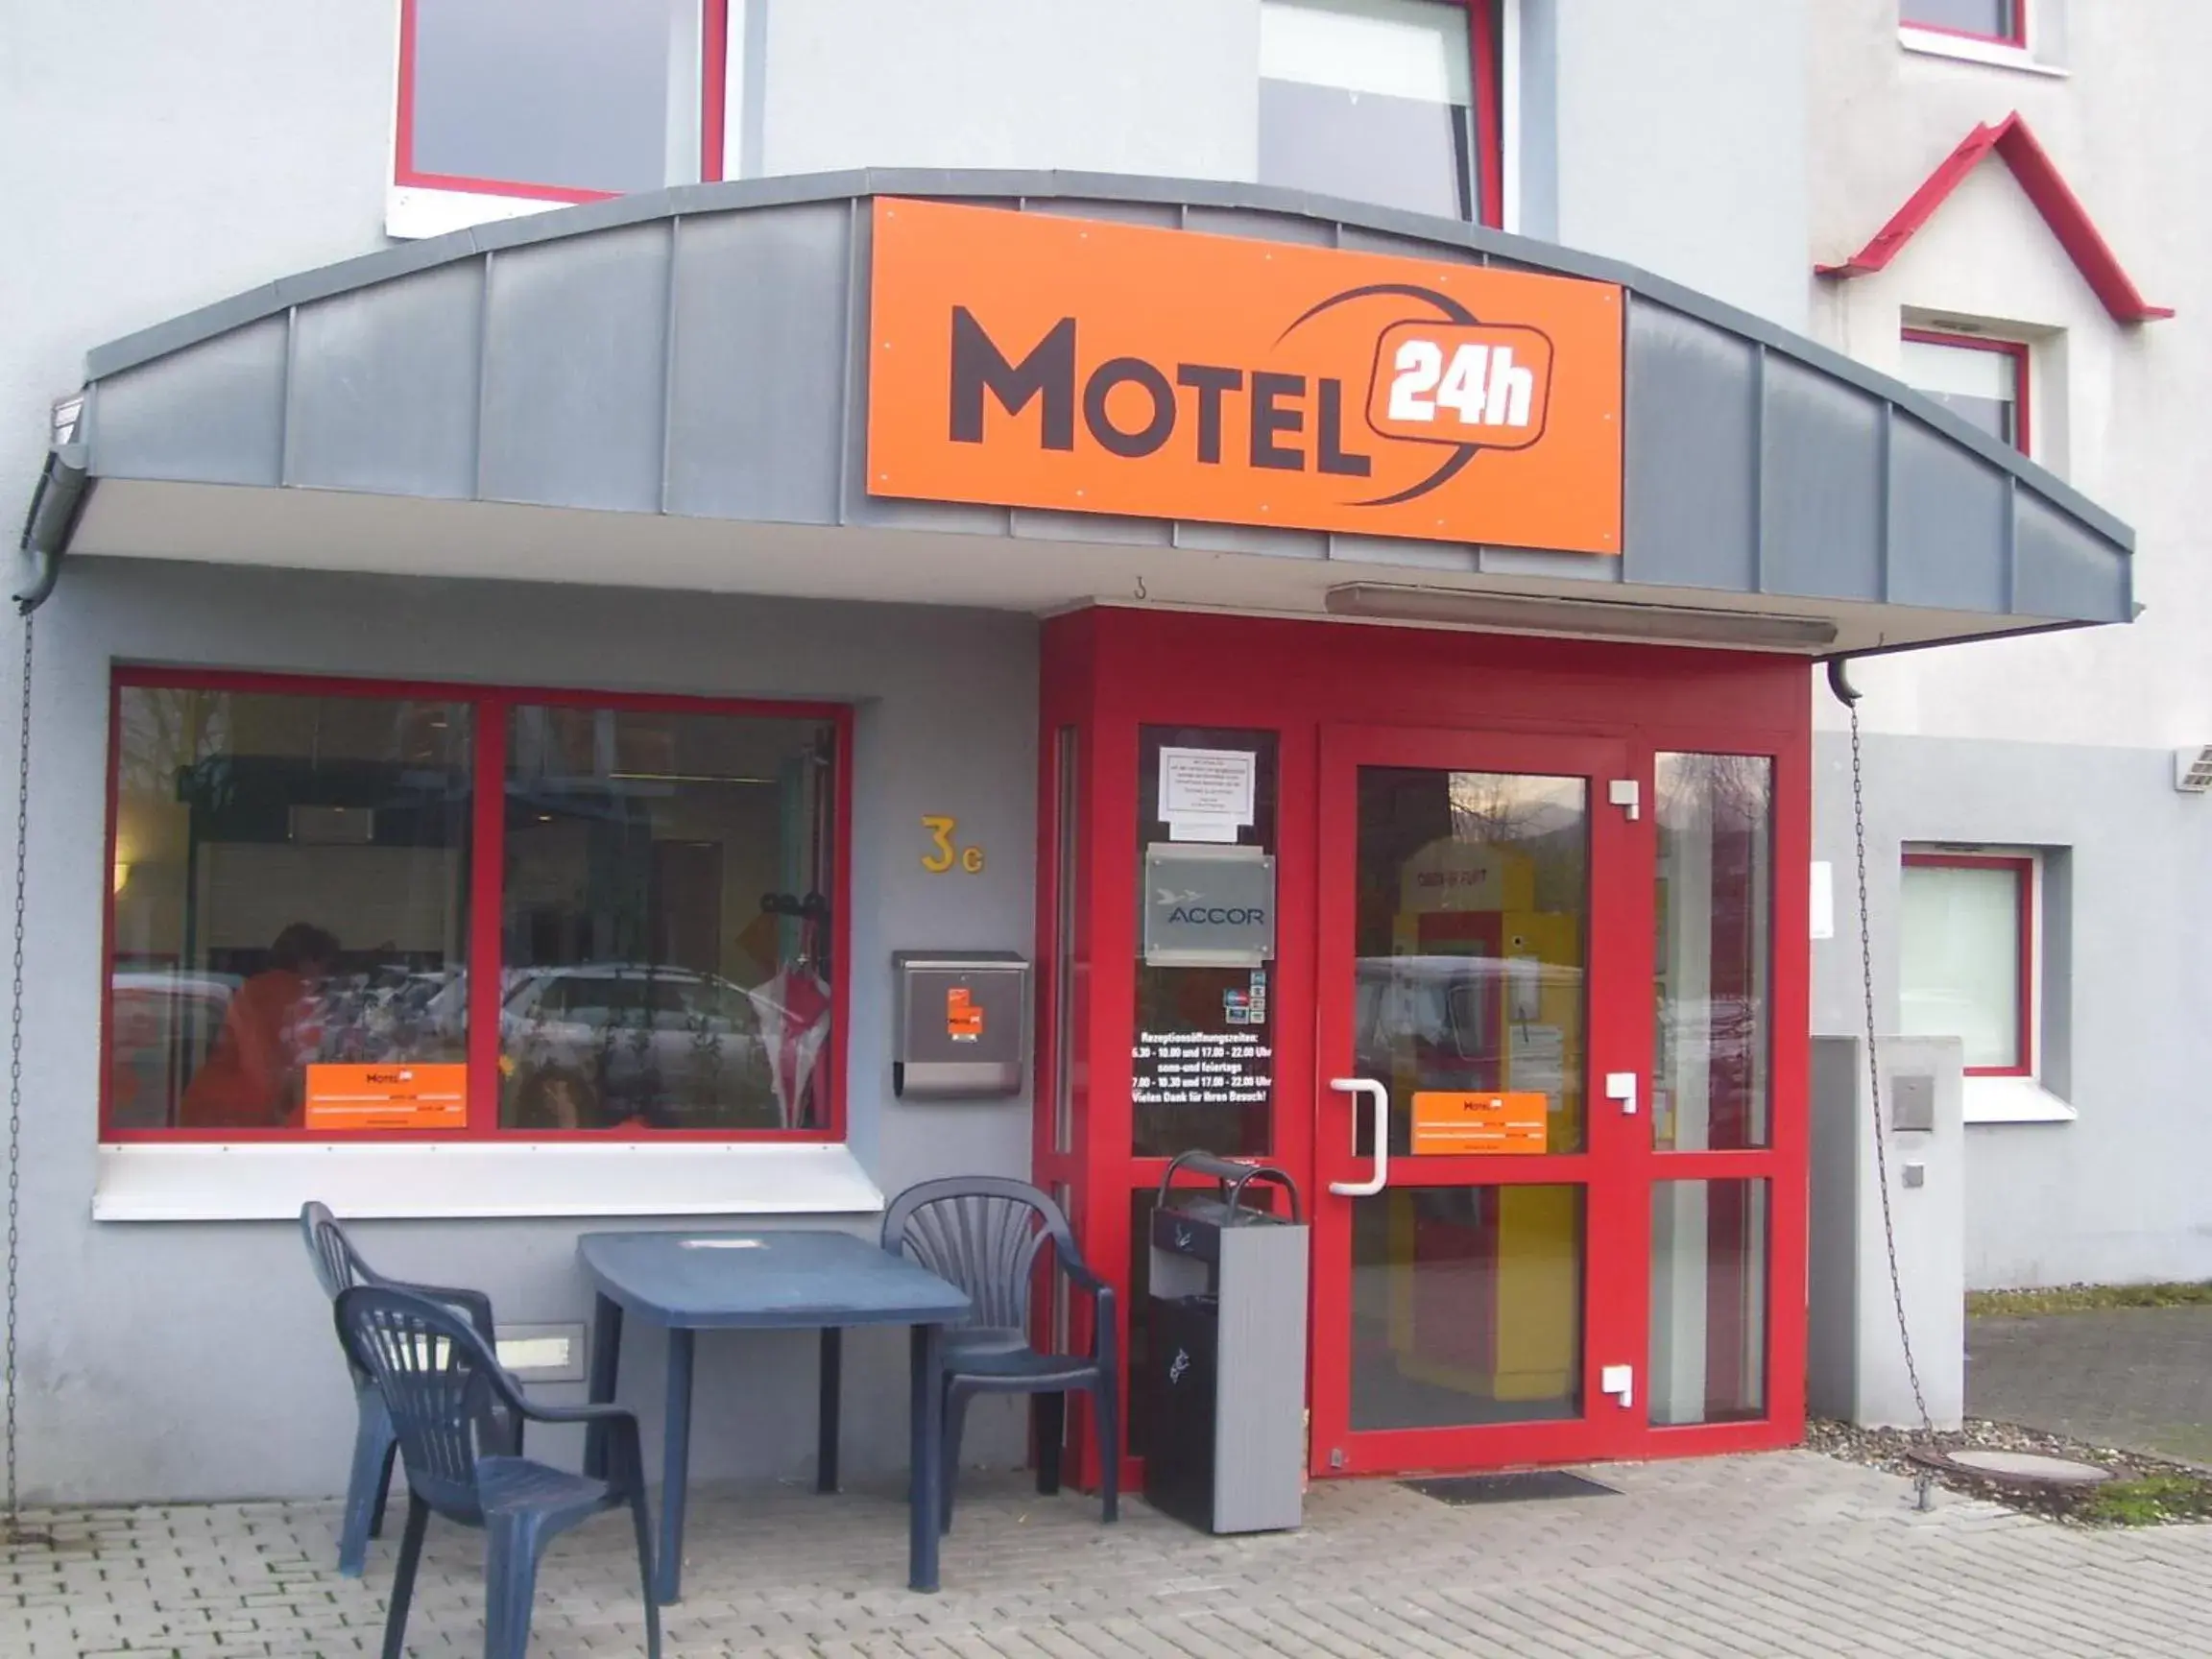 Facade/entrance in Motel 24h Bremen